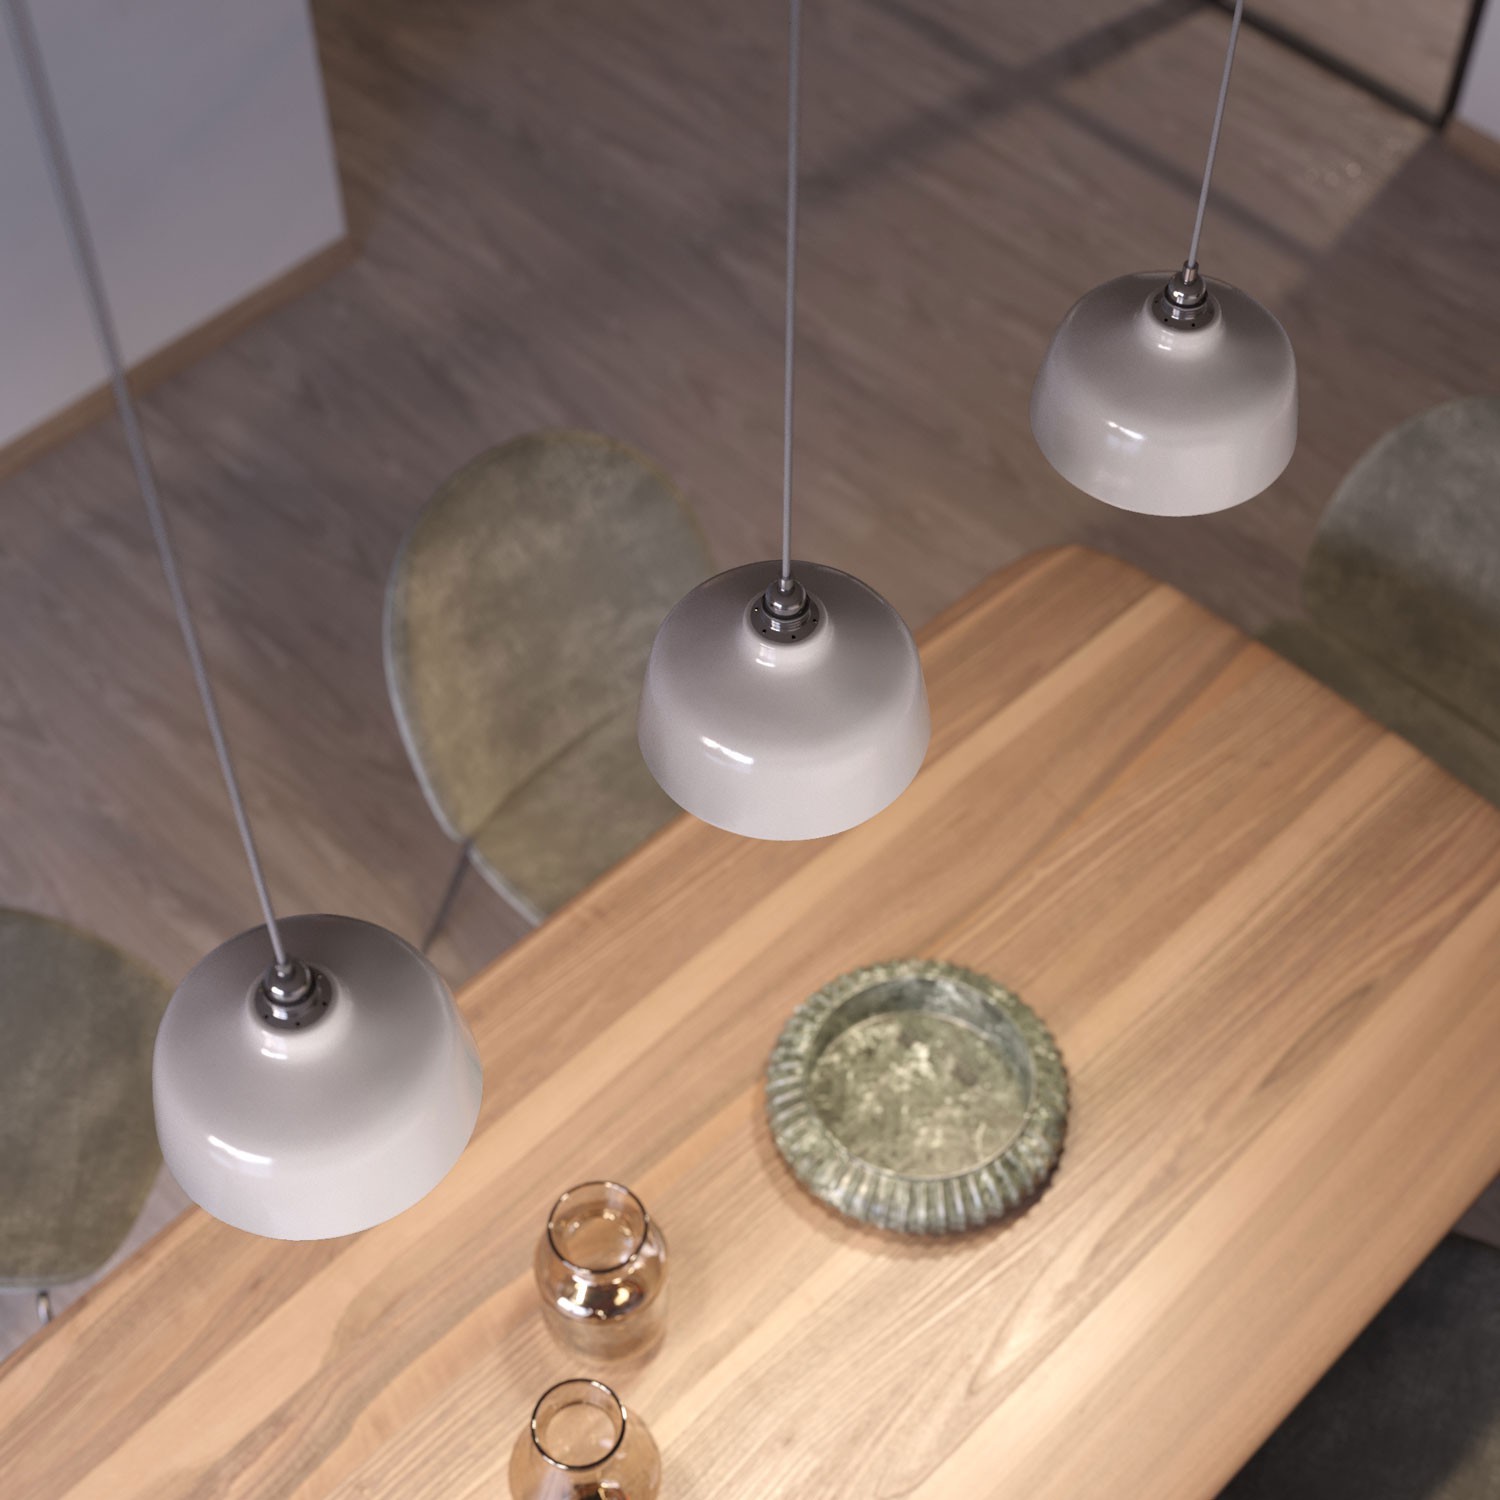 Tassenförmiger Lampenschirm aus Keramik - Materia Kollektion - Made in Italy